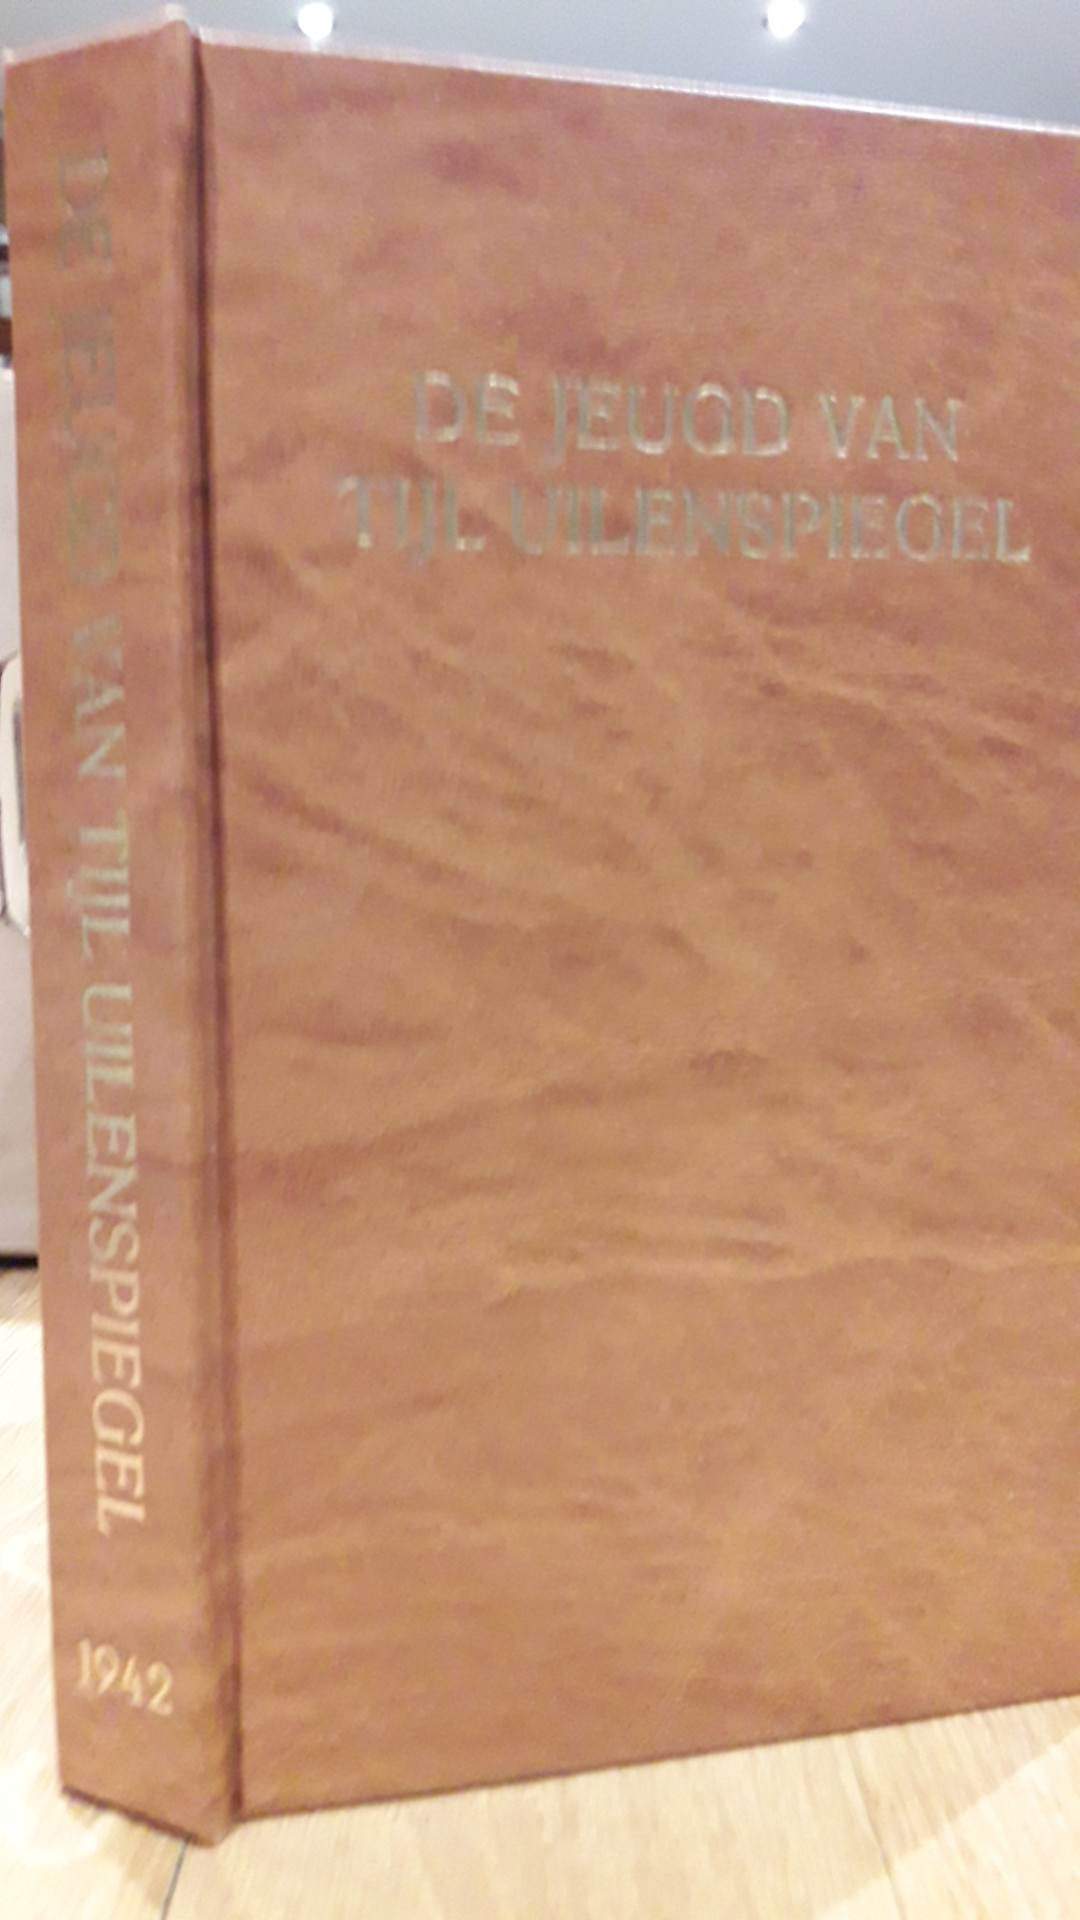 De Jeugd van Tijl Uilenspiegel door Raf Verhulst / uitgave 1942 Volk en Staat.